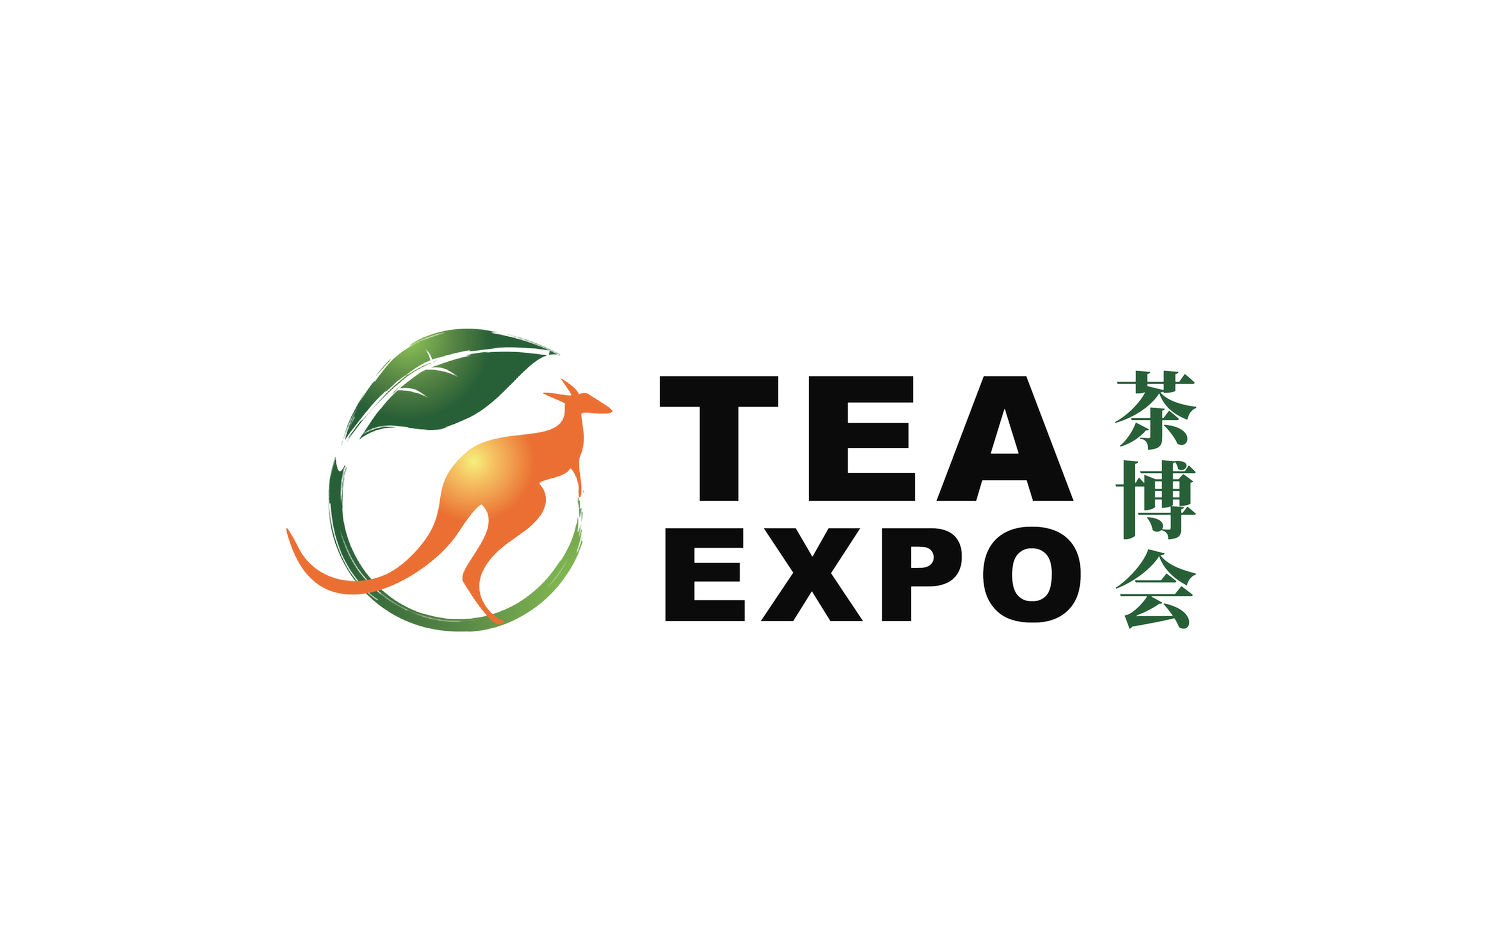 www.teaexpo.com.au